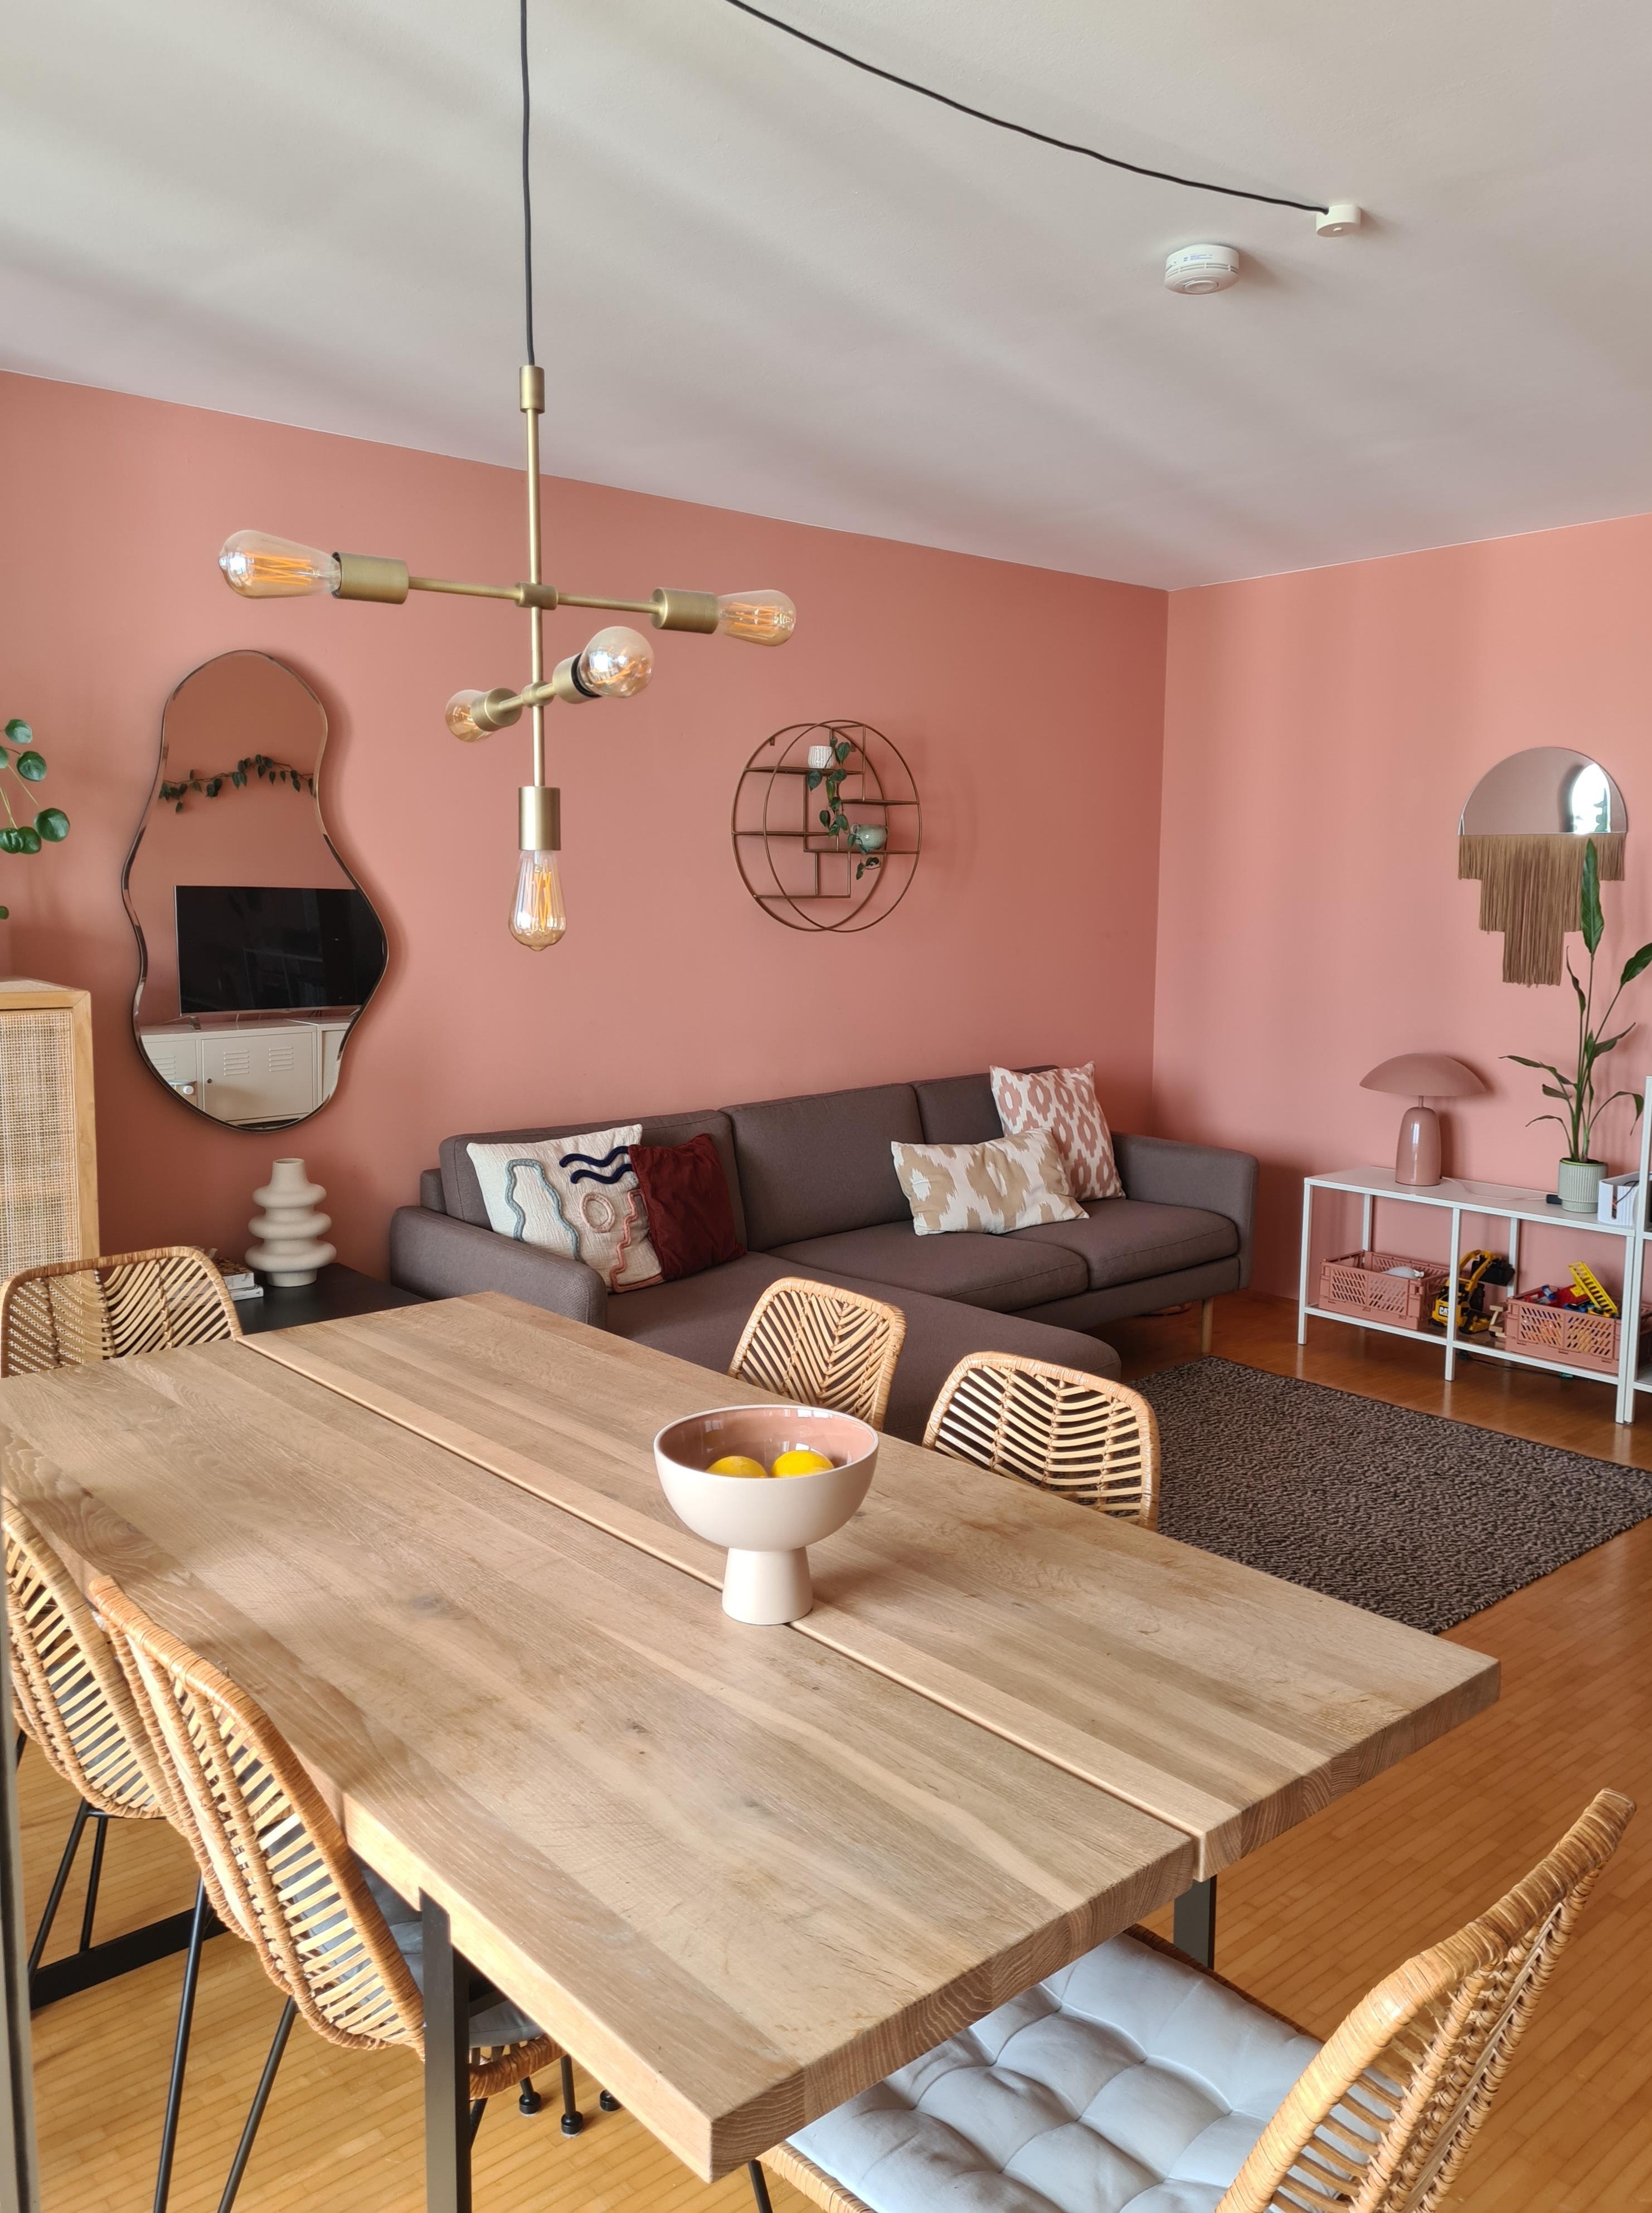 Einblick ins Wohnzimmer- habt ein schönes Wochenende 🌞
#wohnzimmer #wandfarbe #esstisch